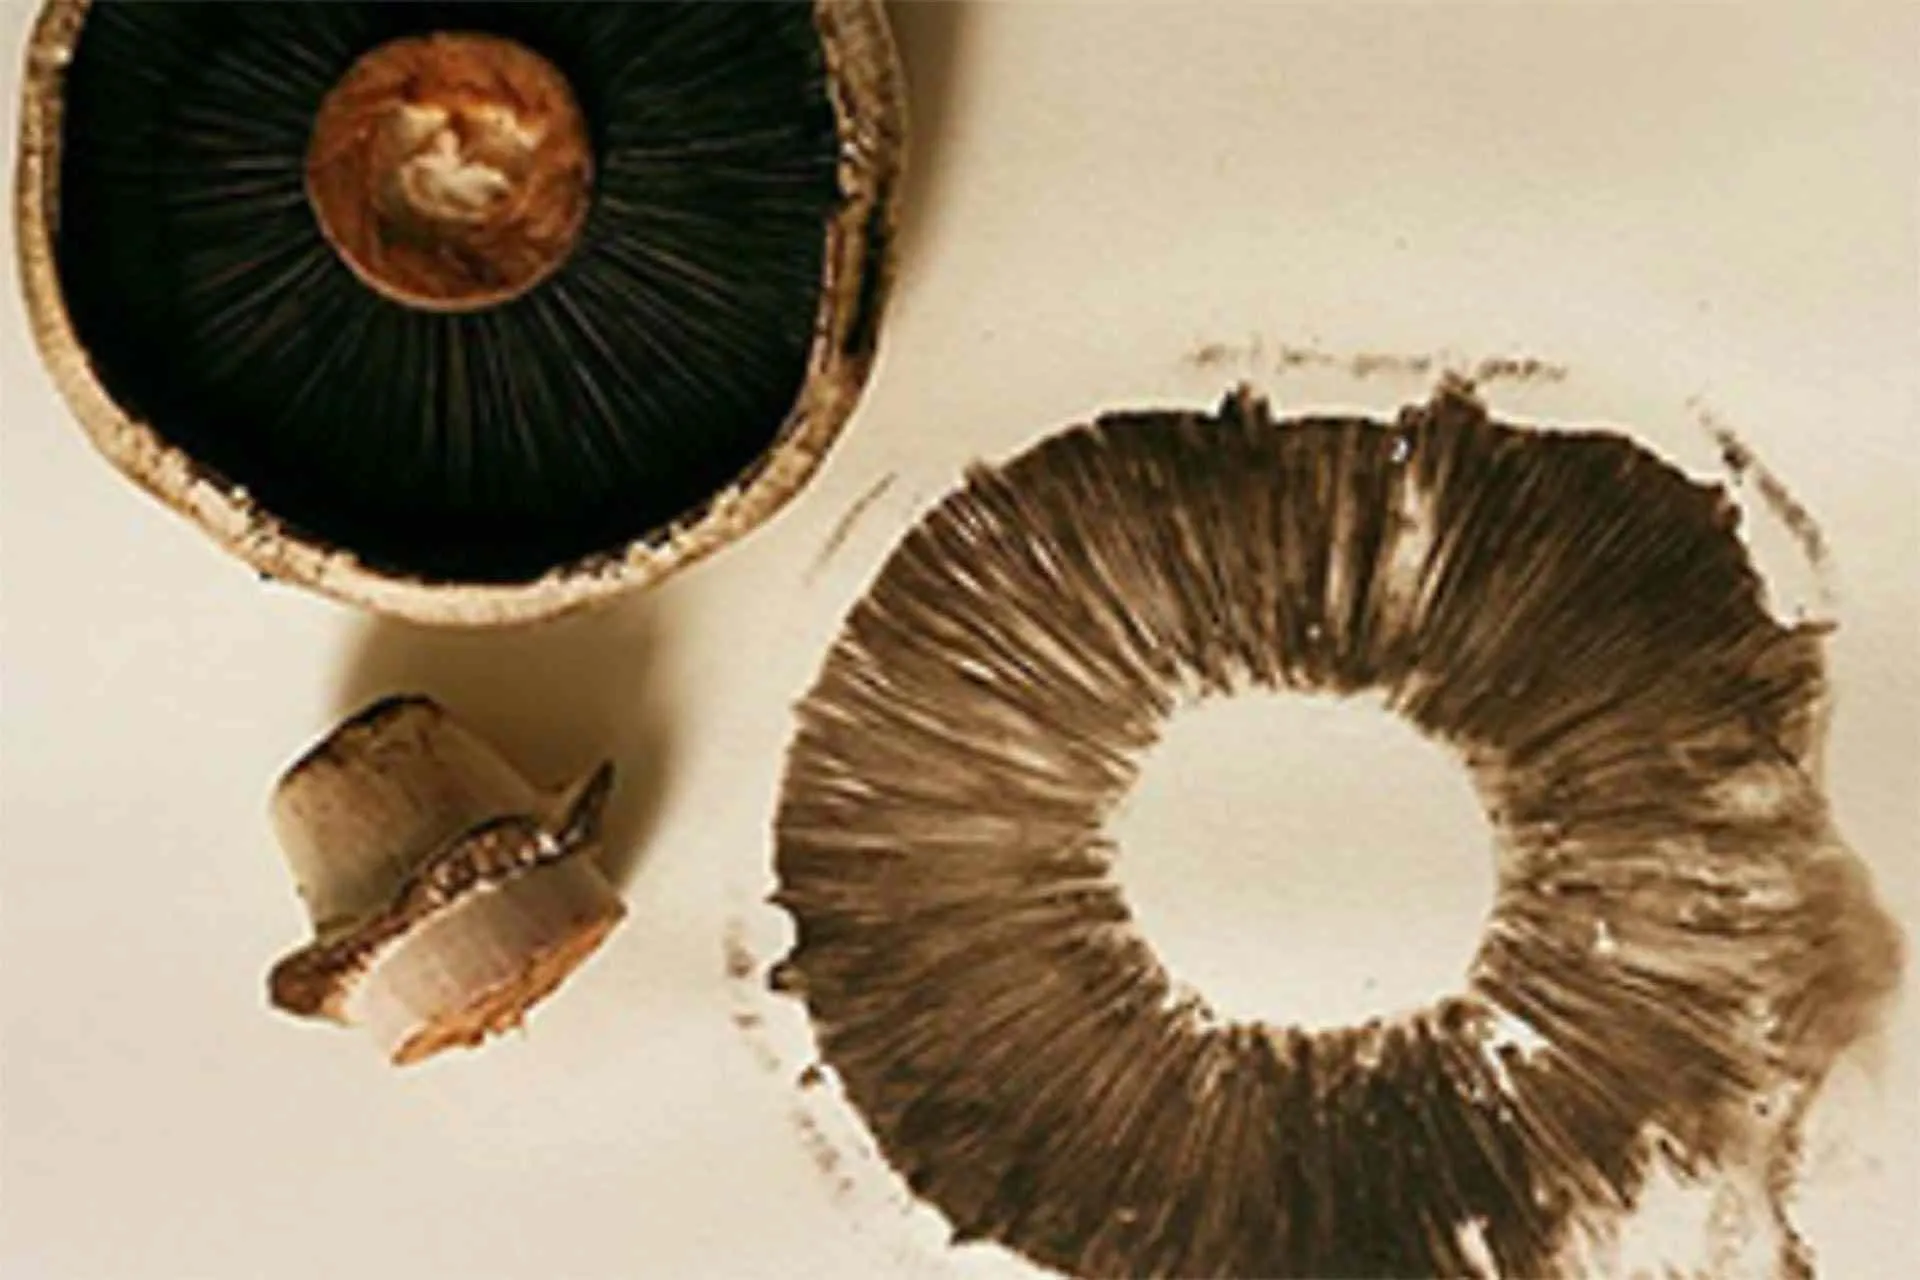 Mushrooms used as block